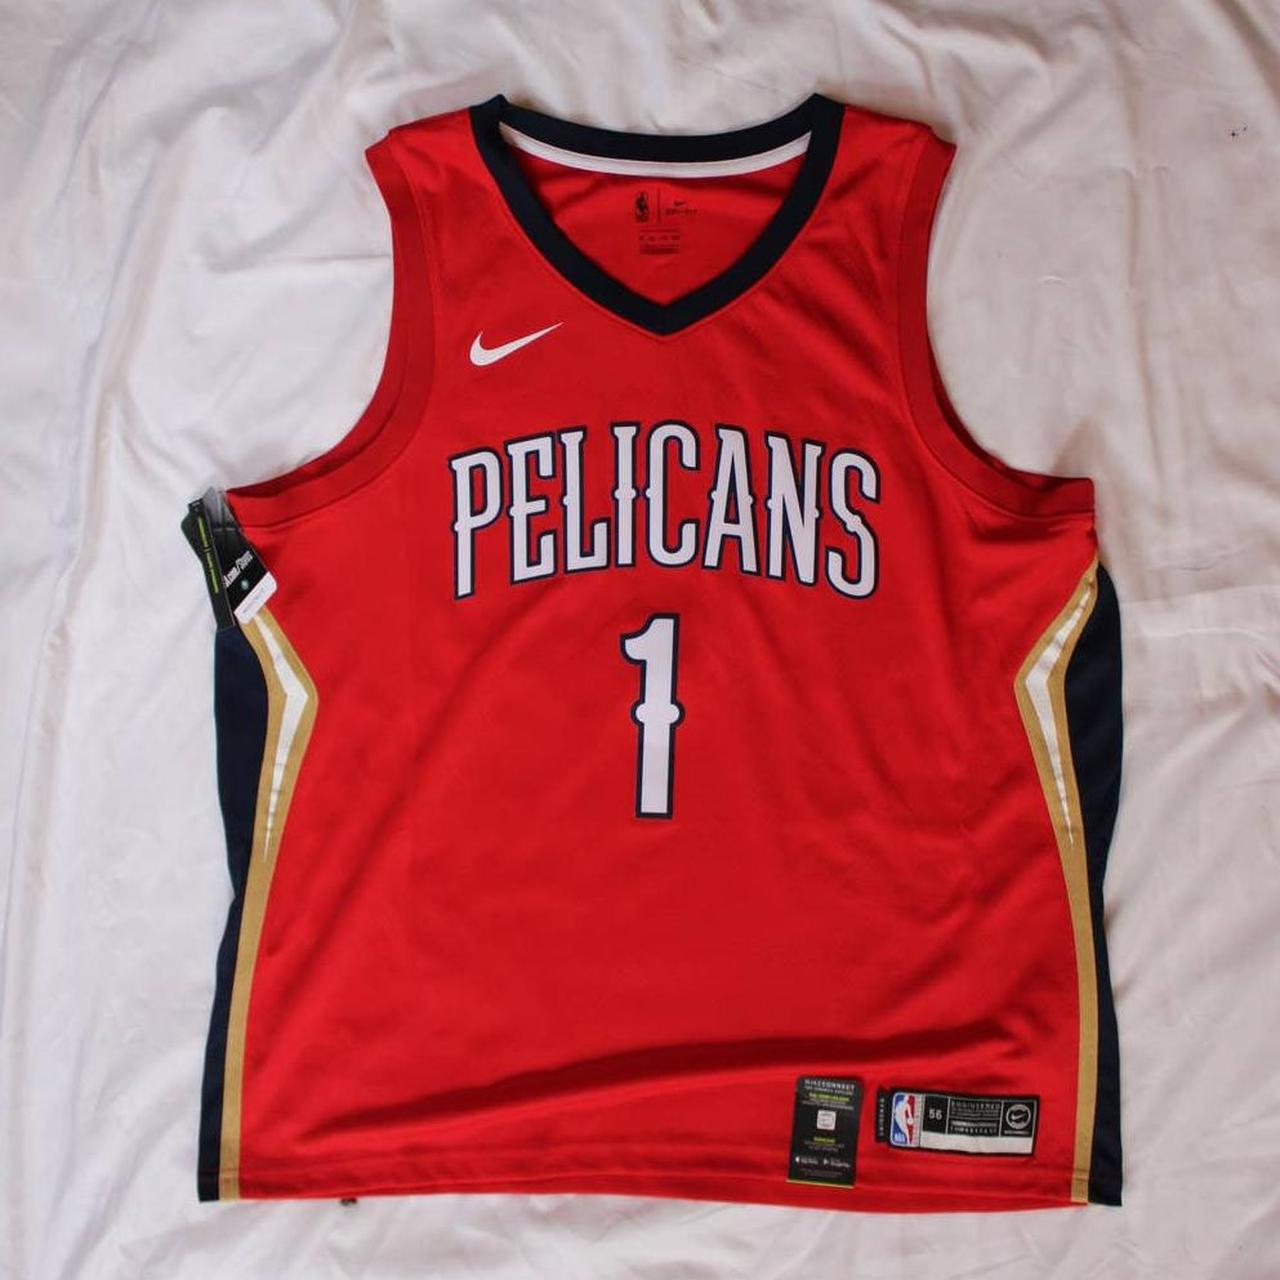 men's pelicans jersey